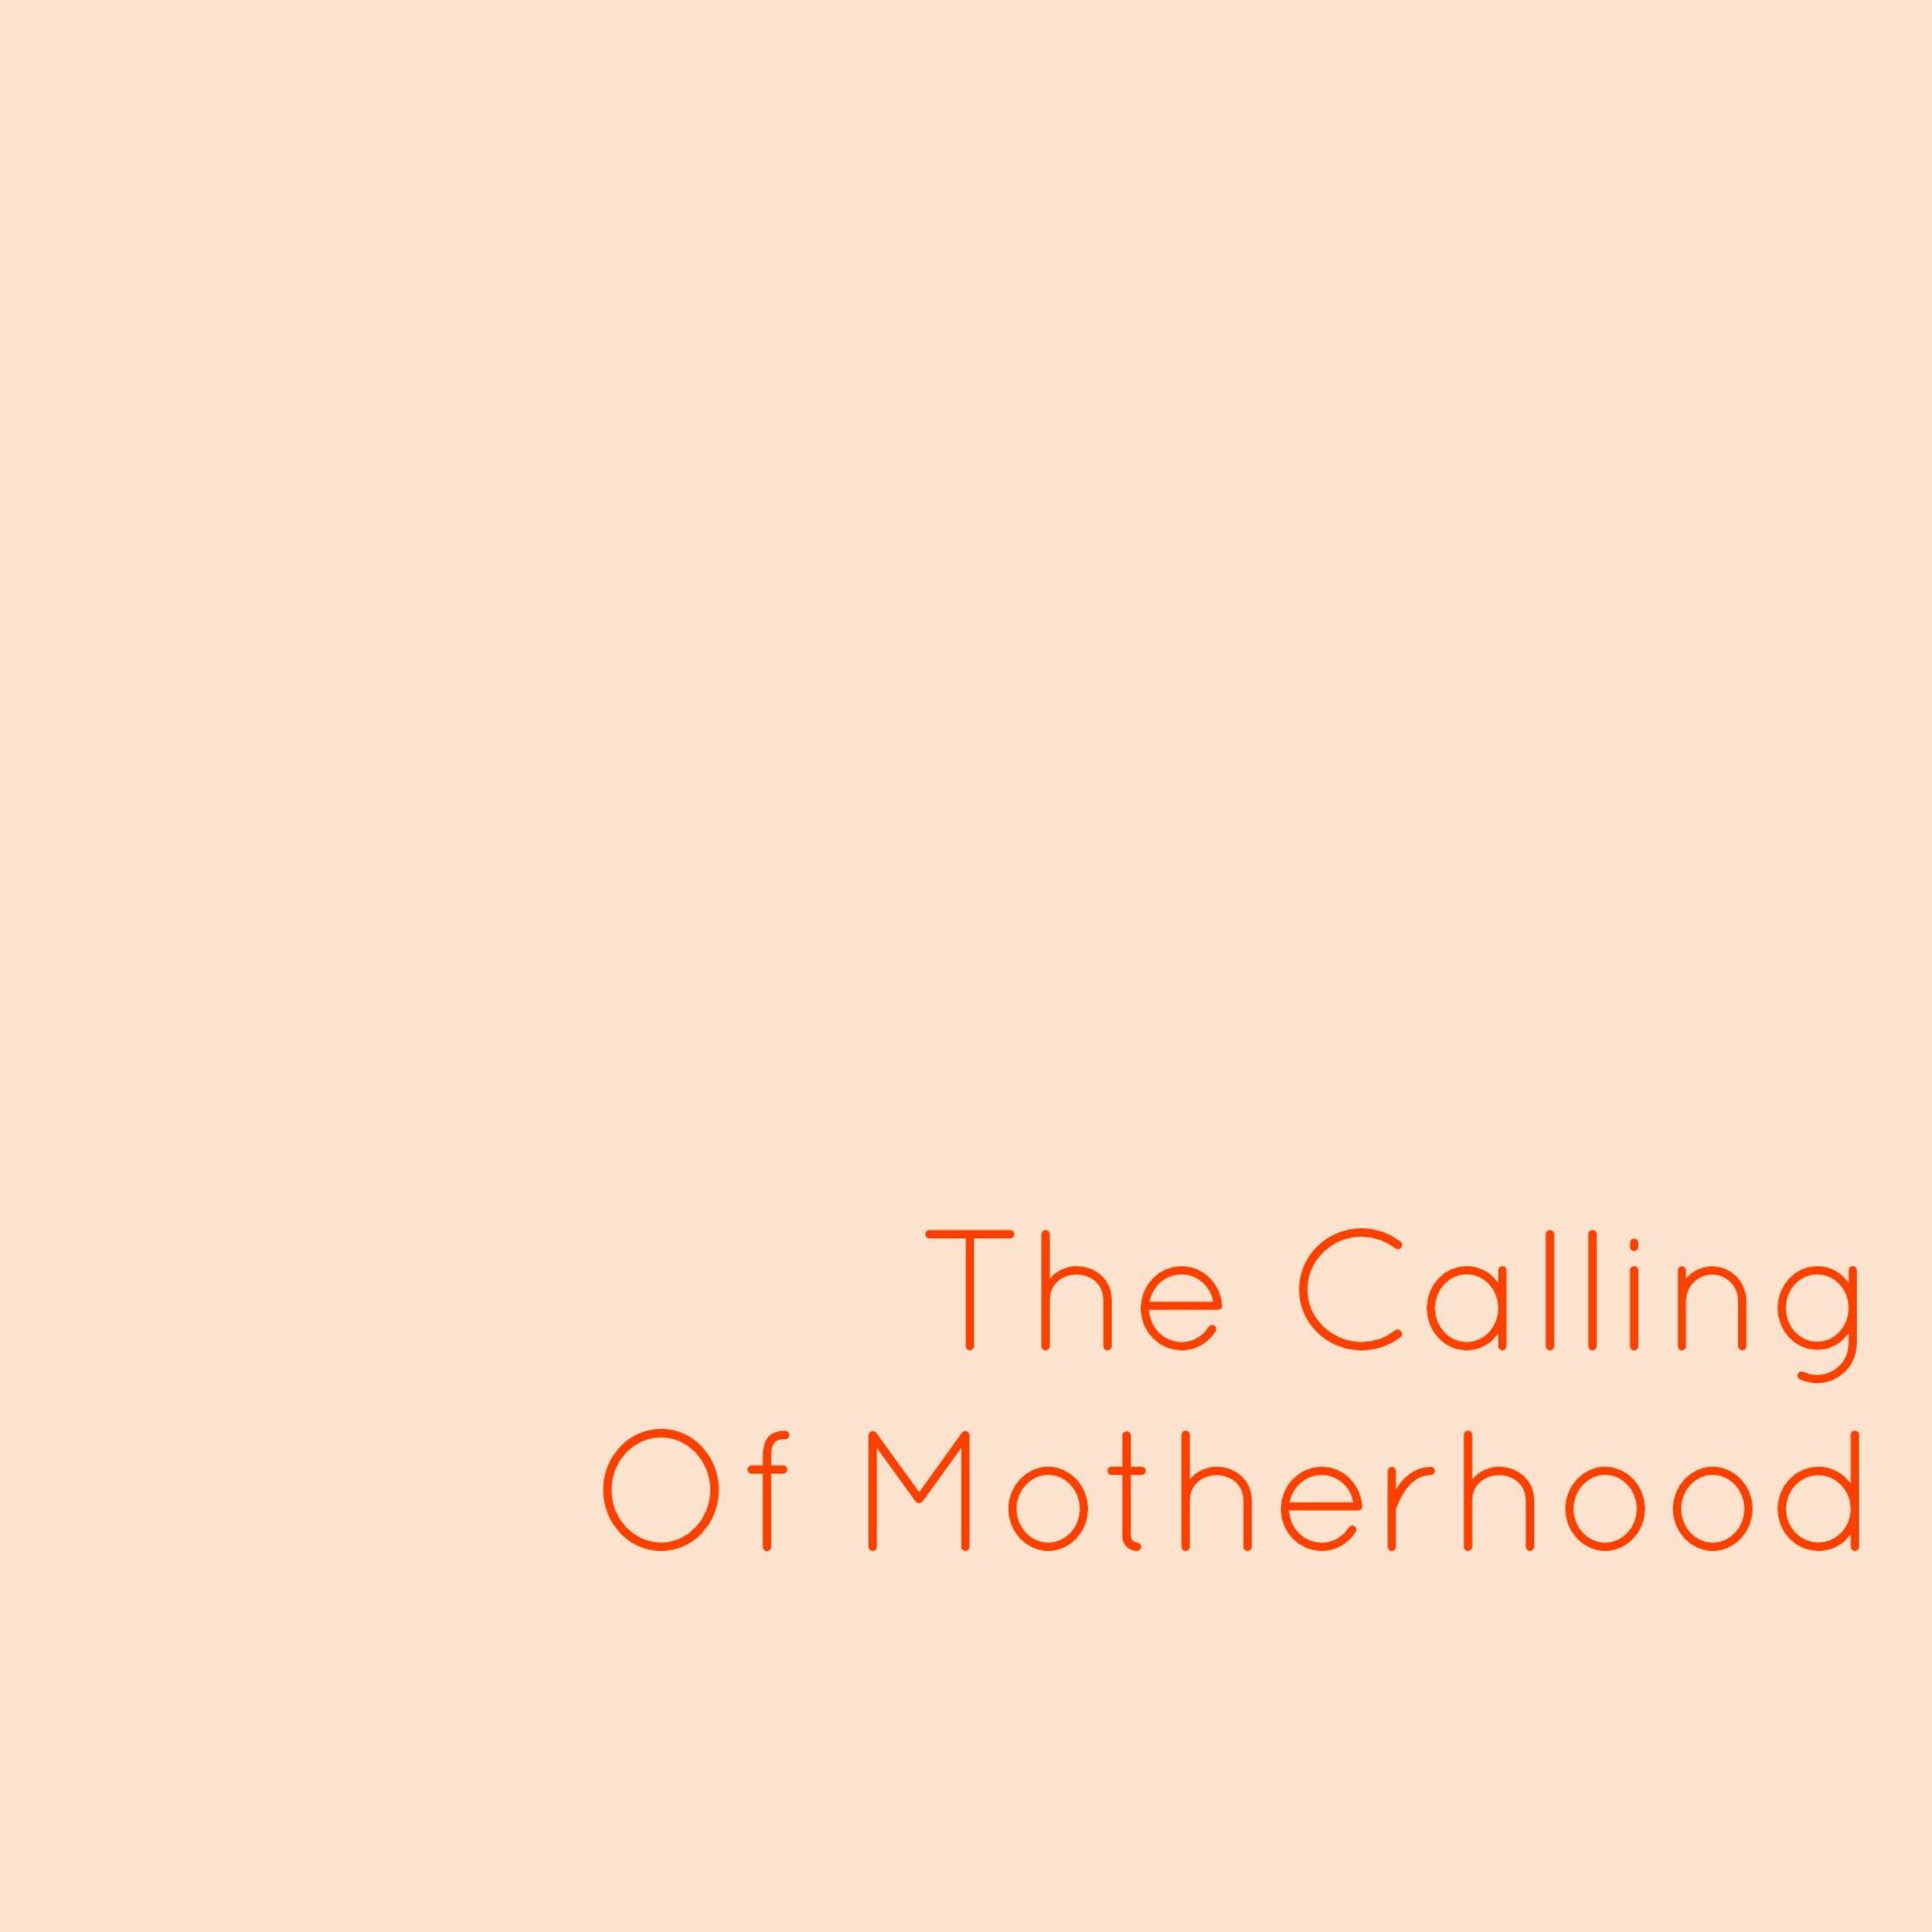 Ep 21: The Calling Of Motherhood